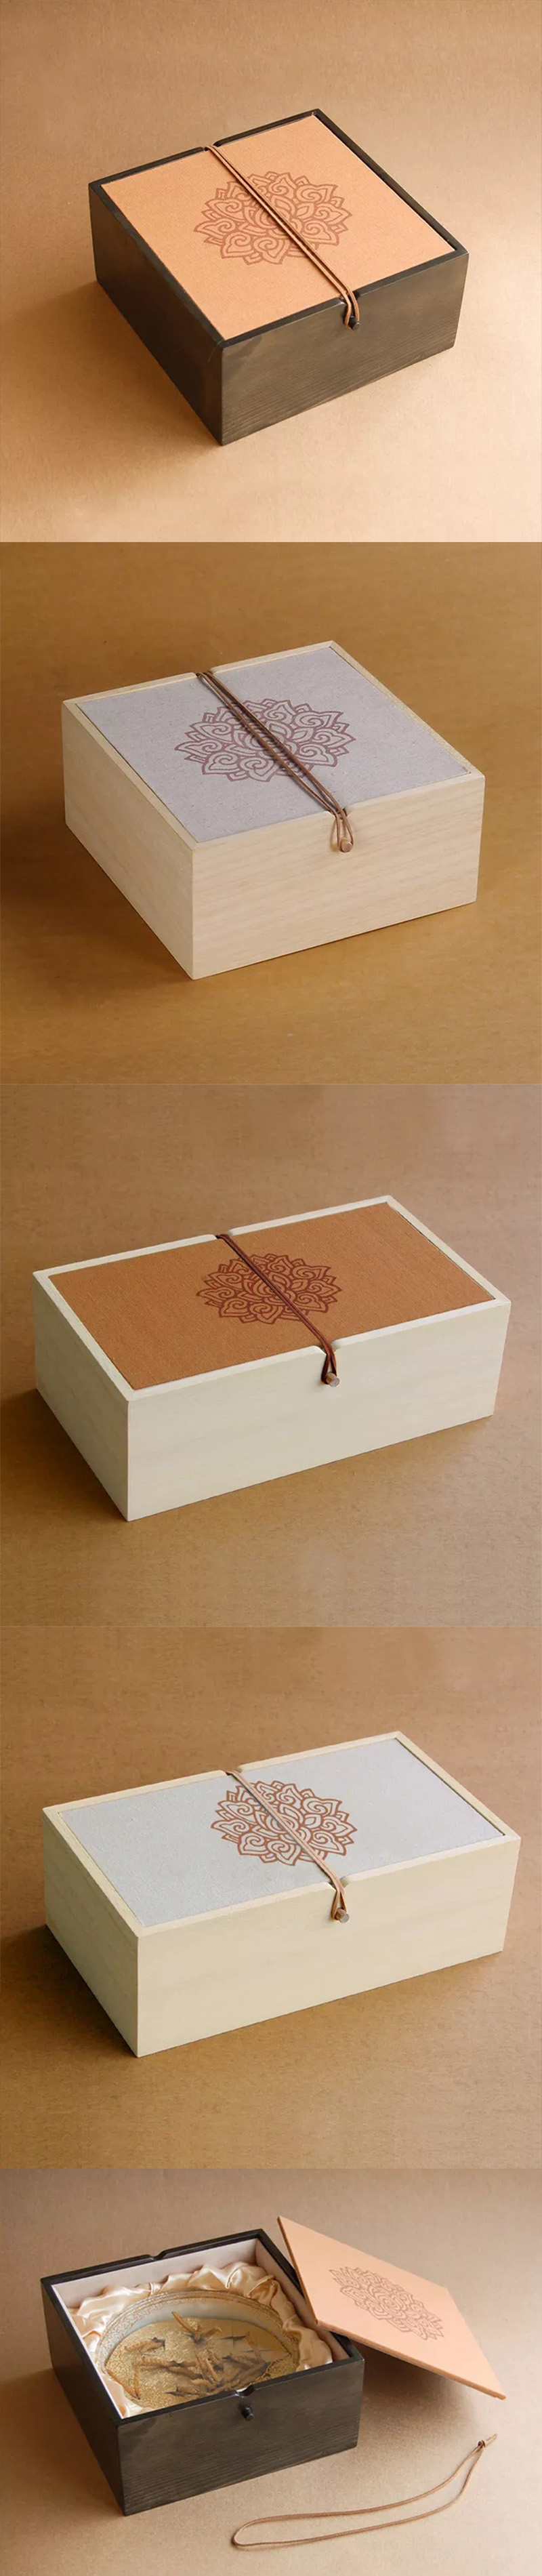 简约茶叶礼盒木盒包装定制